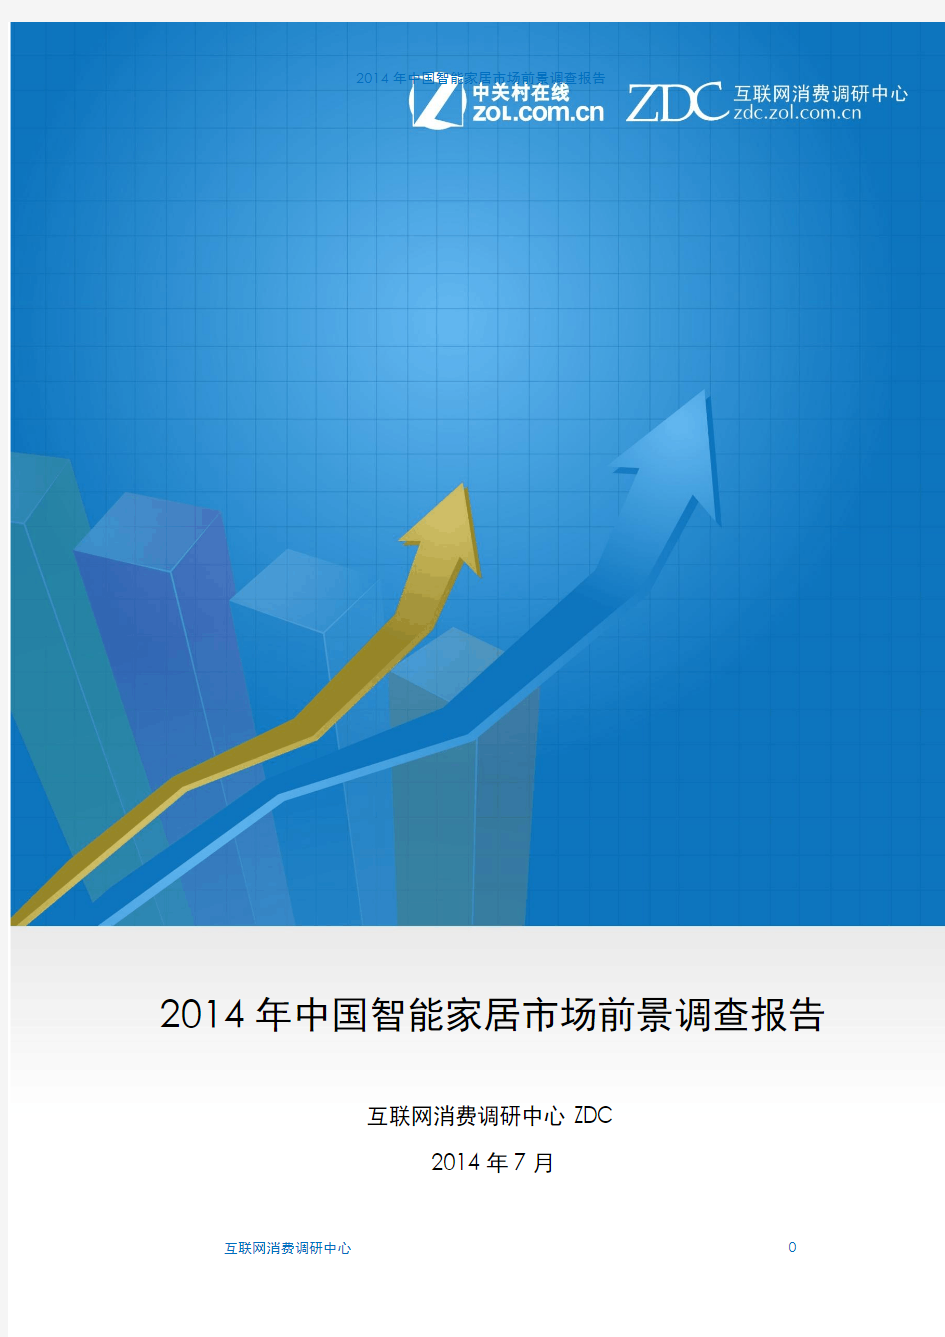 2014年中国智能家居市场前景调查报告